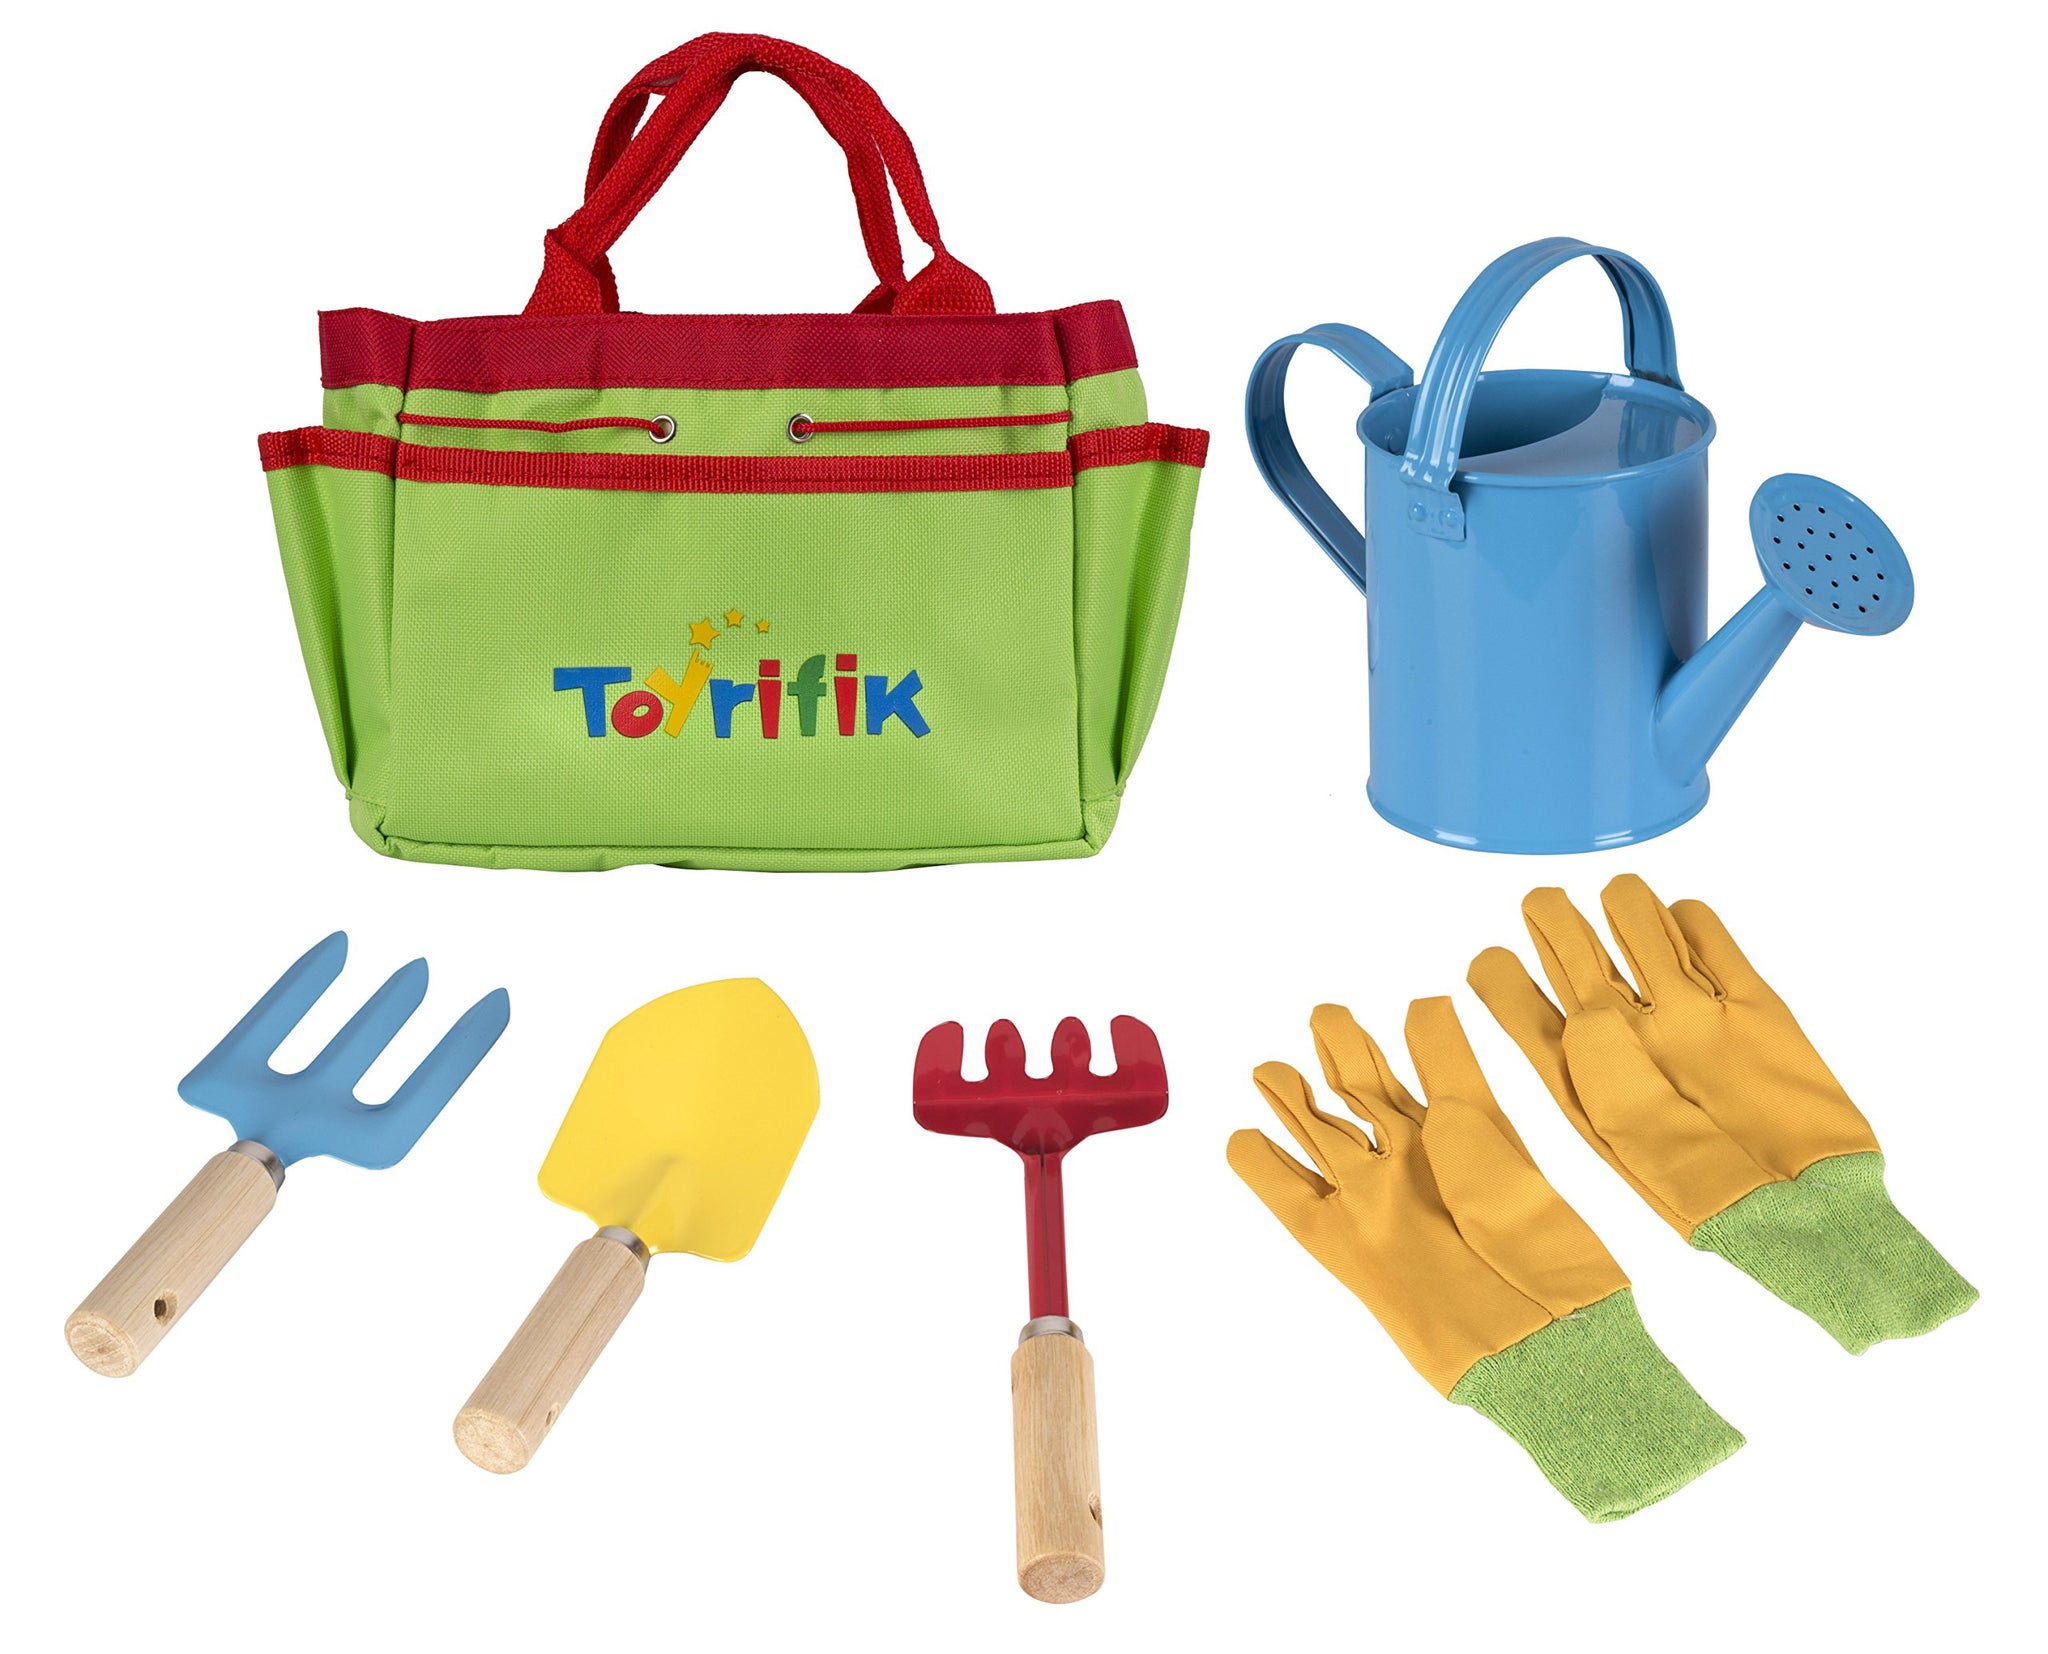 Little Gardener Tool Set With Garden Tools Bag For Kids Gardening - Kit Includes Watering Can, Children Gardening Gloves, Shovel, Rake, Fork And Garden Tote Bag-Children Gardening All In One Kit